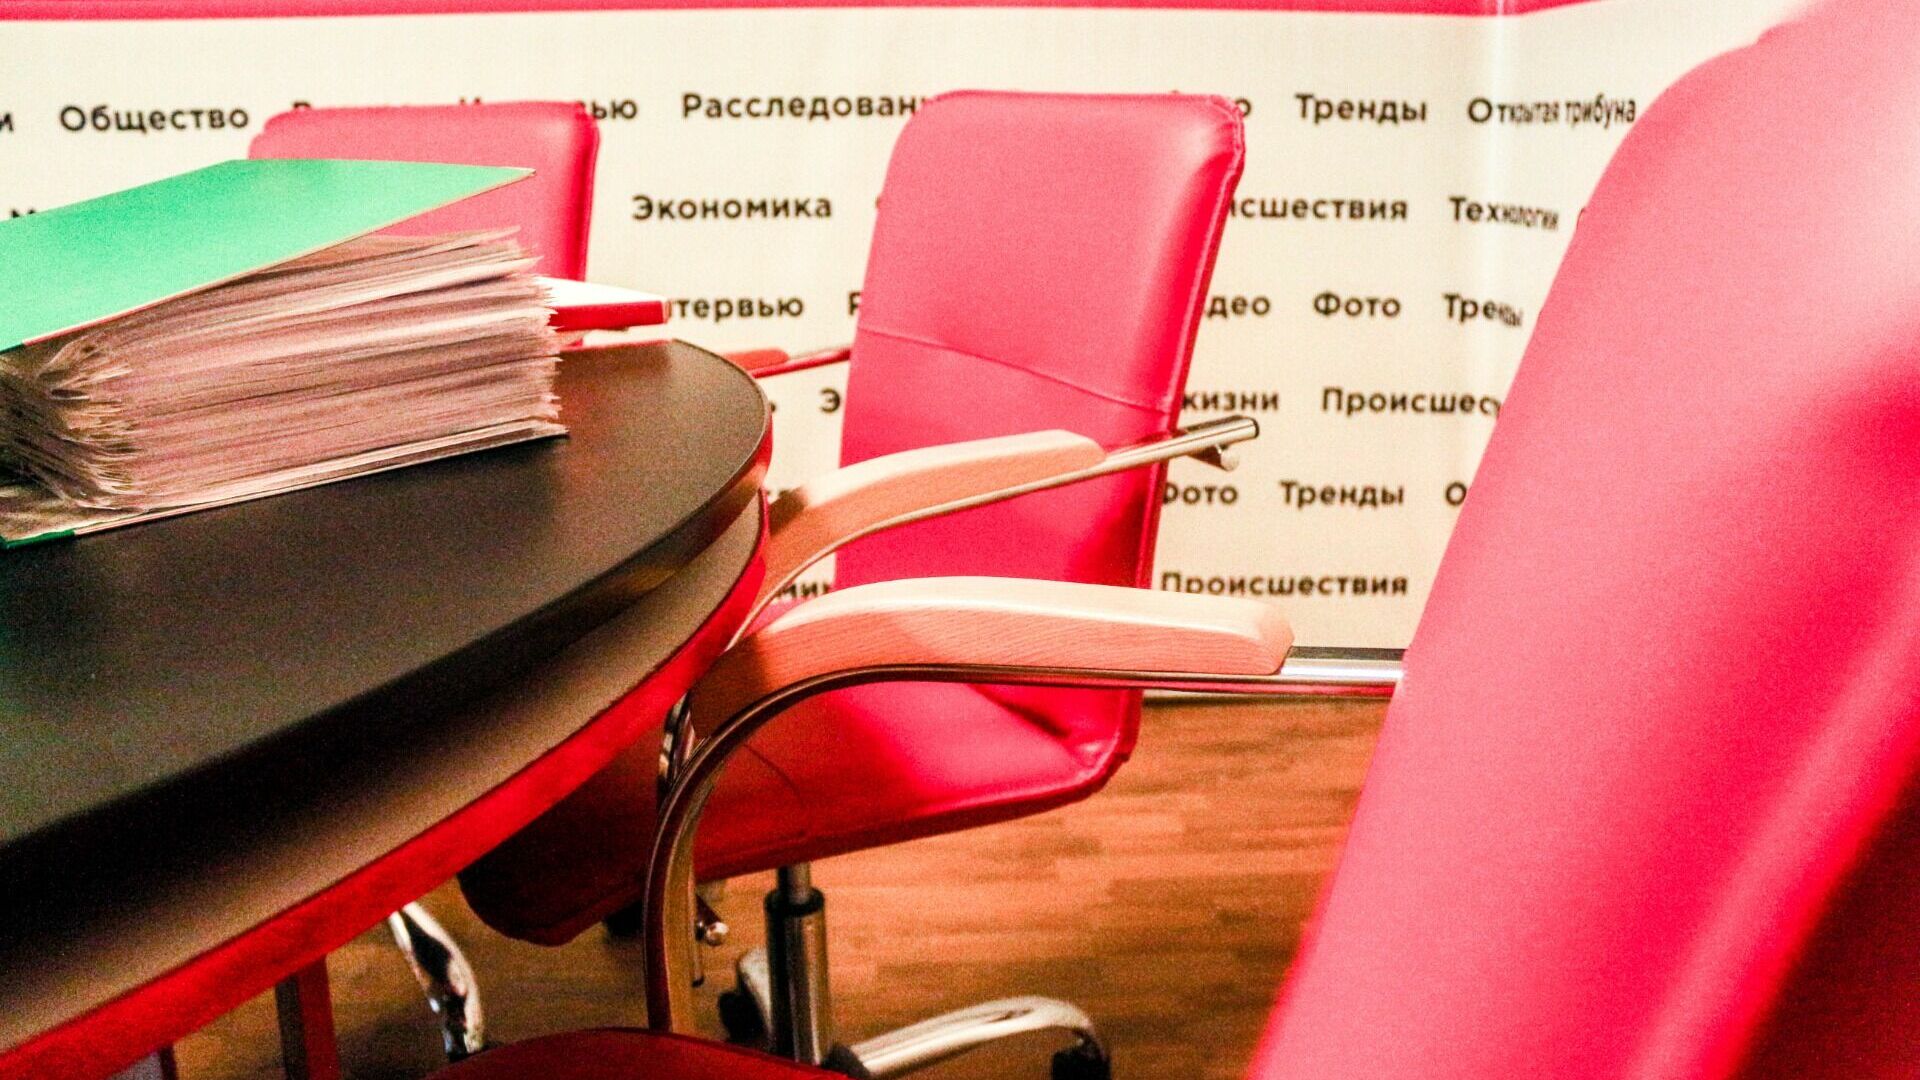 Дума Нижнего Новгорода закупит офисную мебель на 1,7 млн рублей